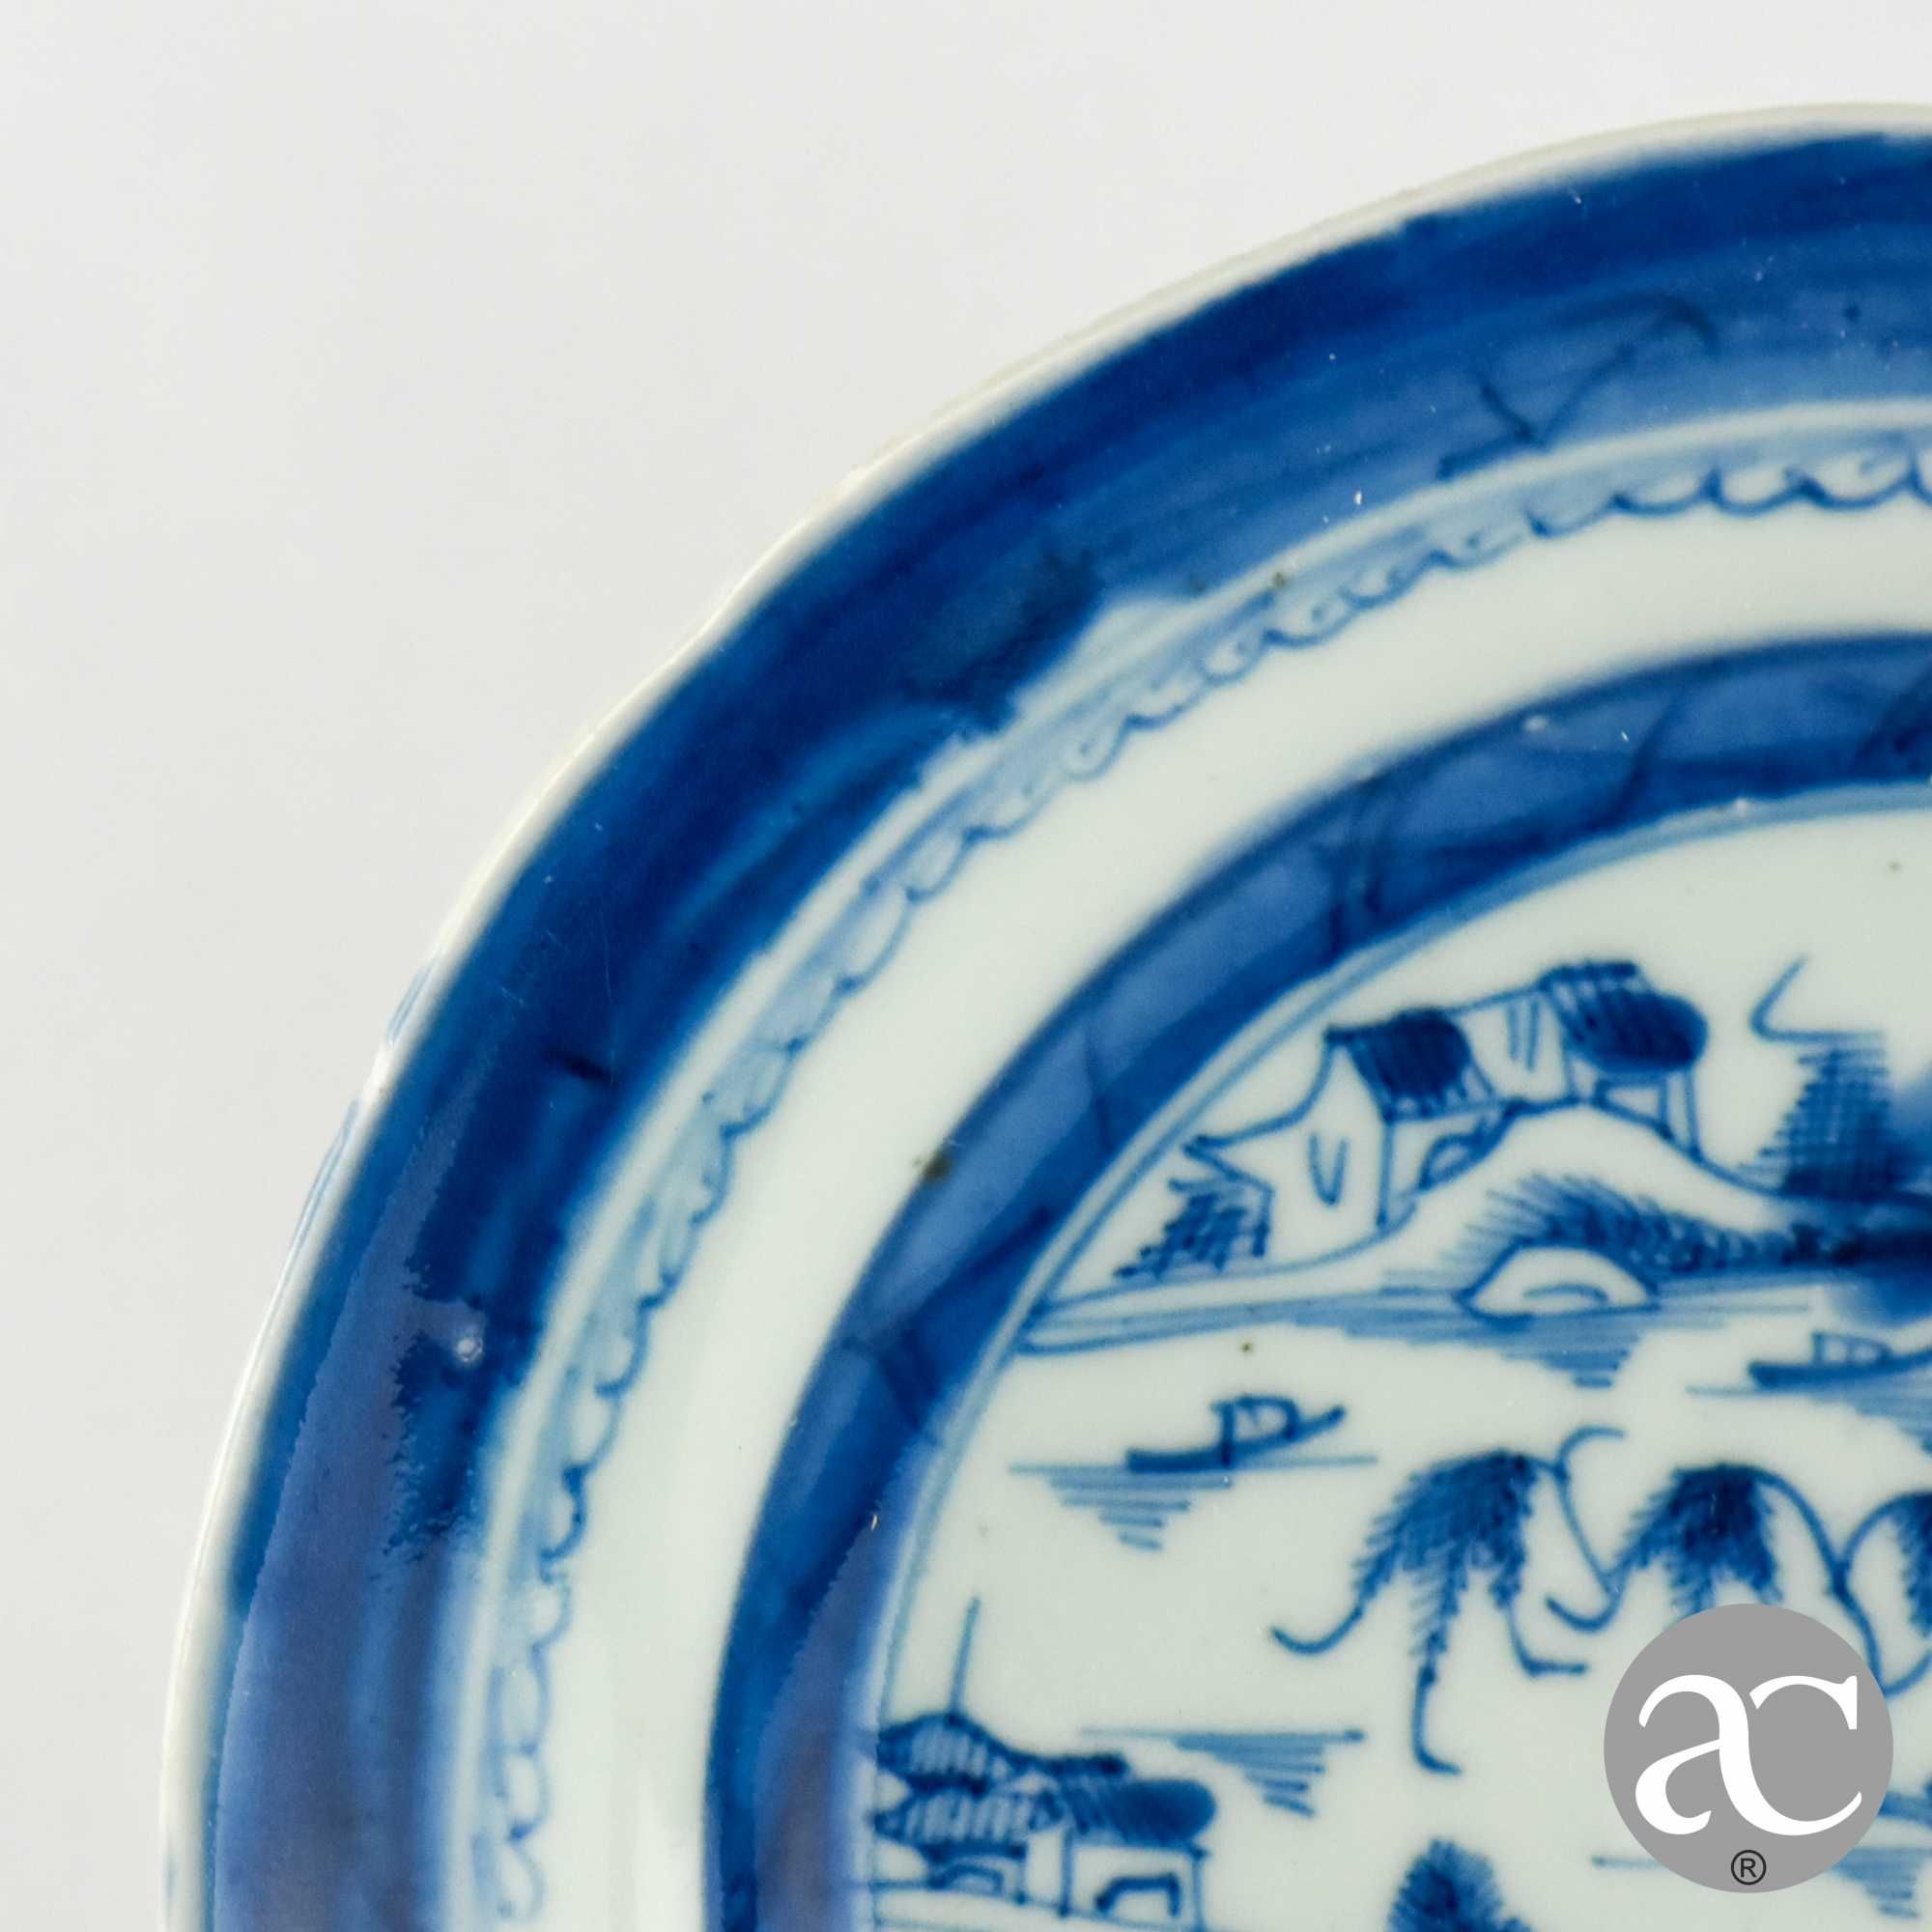 Prato porcelana da China, Cantão, paisagem e pagodes, séc. XVIII